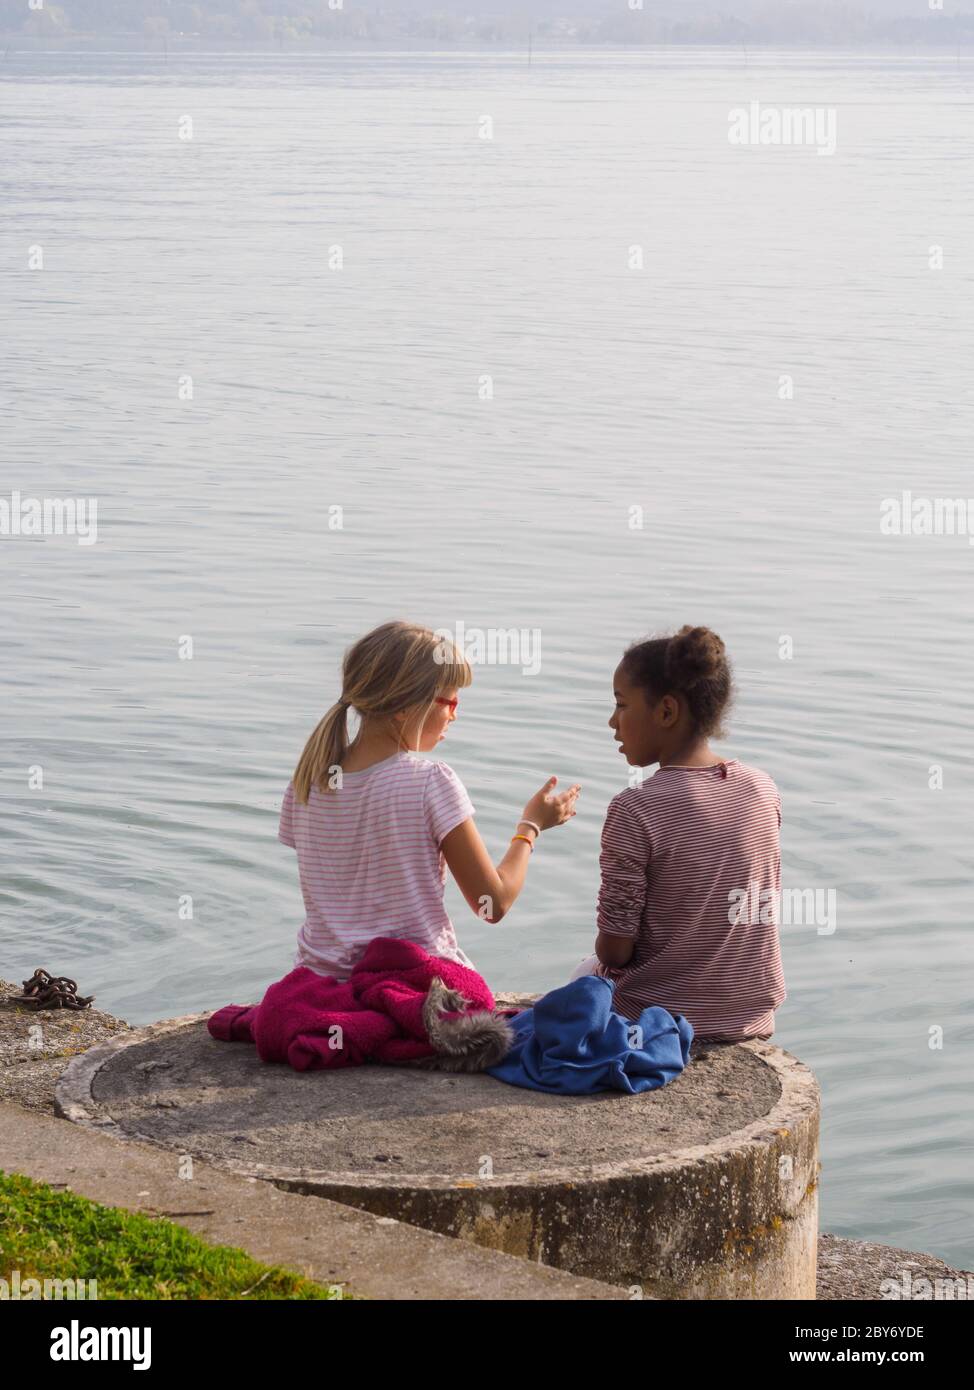 Deux petites filles, une blonde et l'autre noire, s'assoient sur le bord d'un lac en Italie et se parlent l'une avec l'autre... Banque D'Images